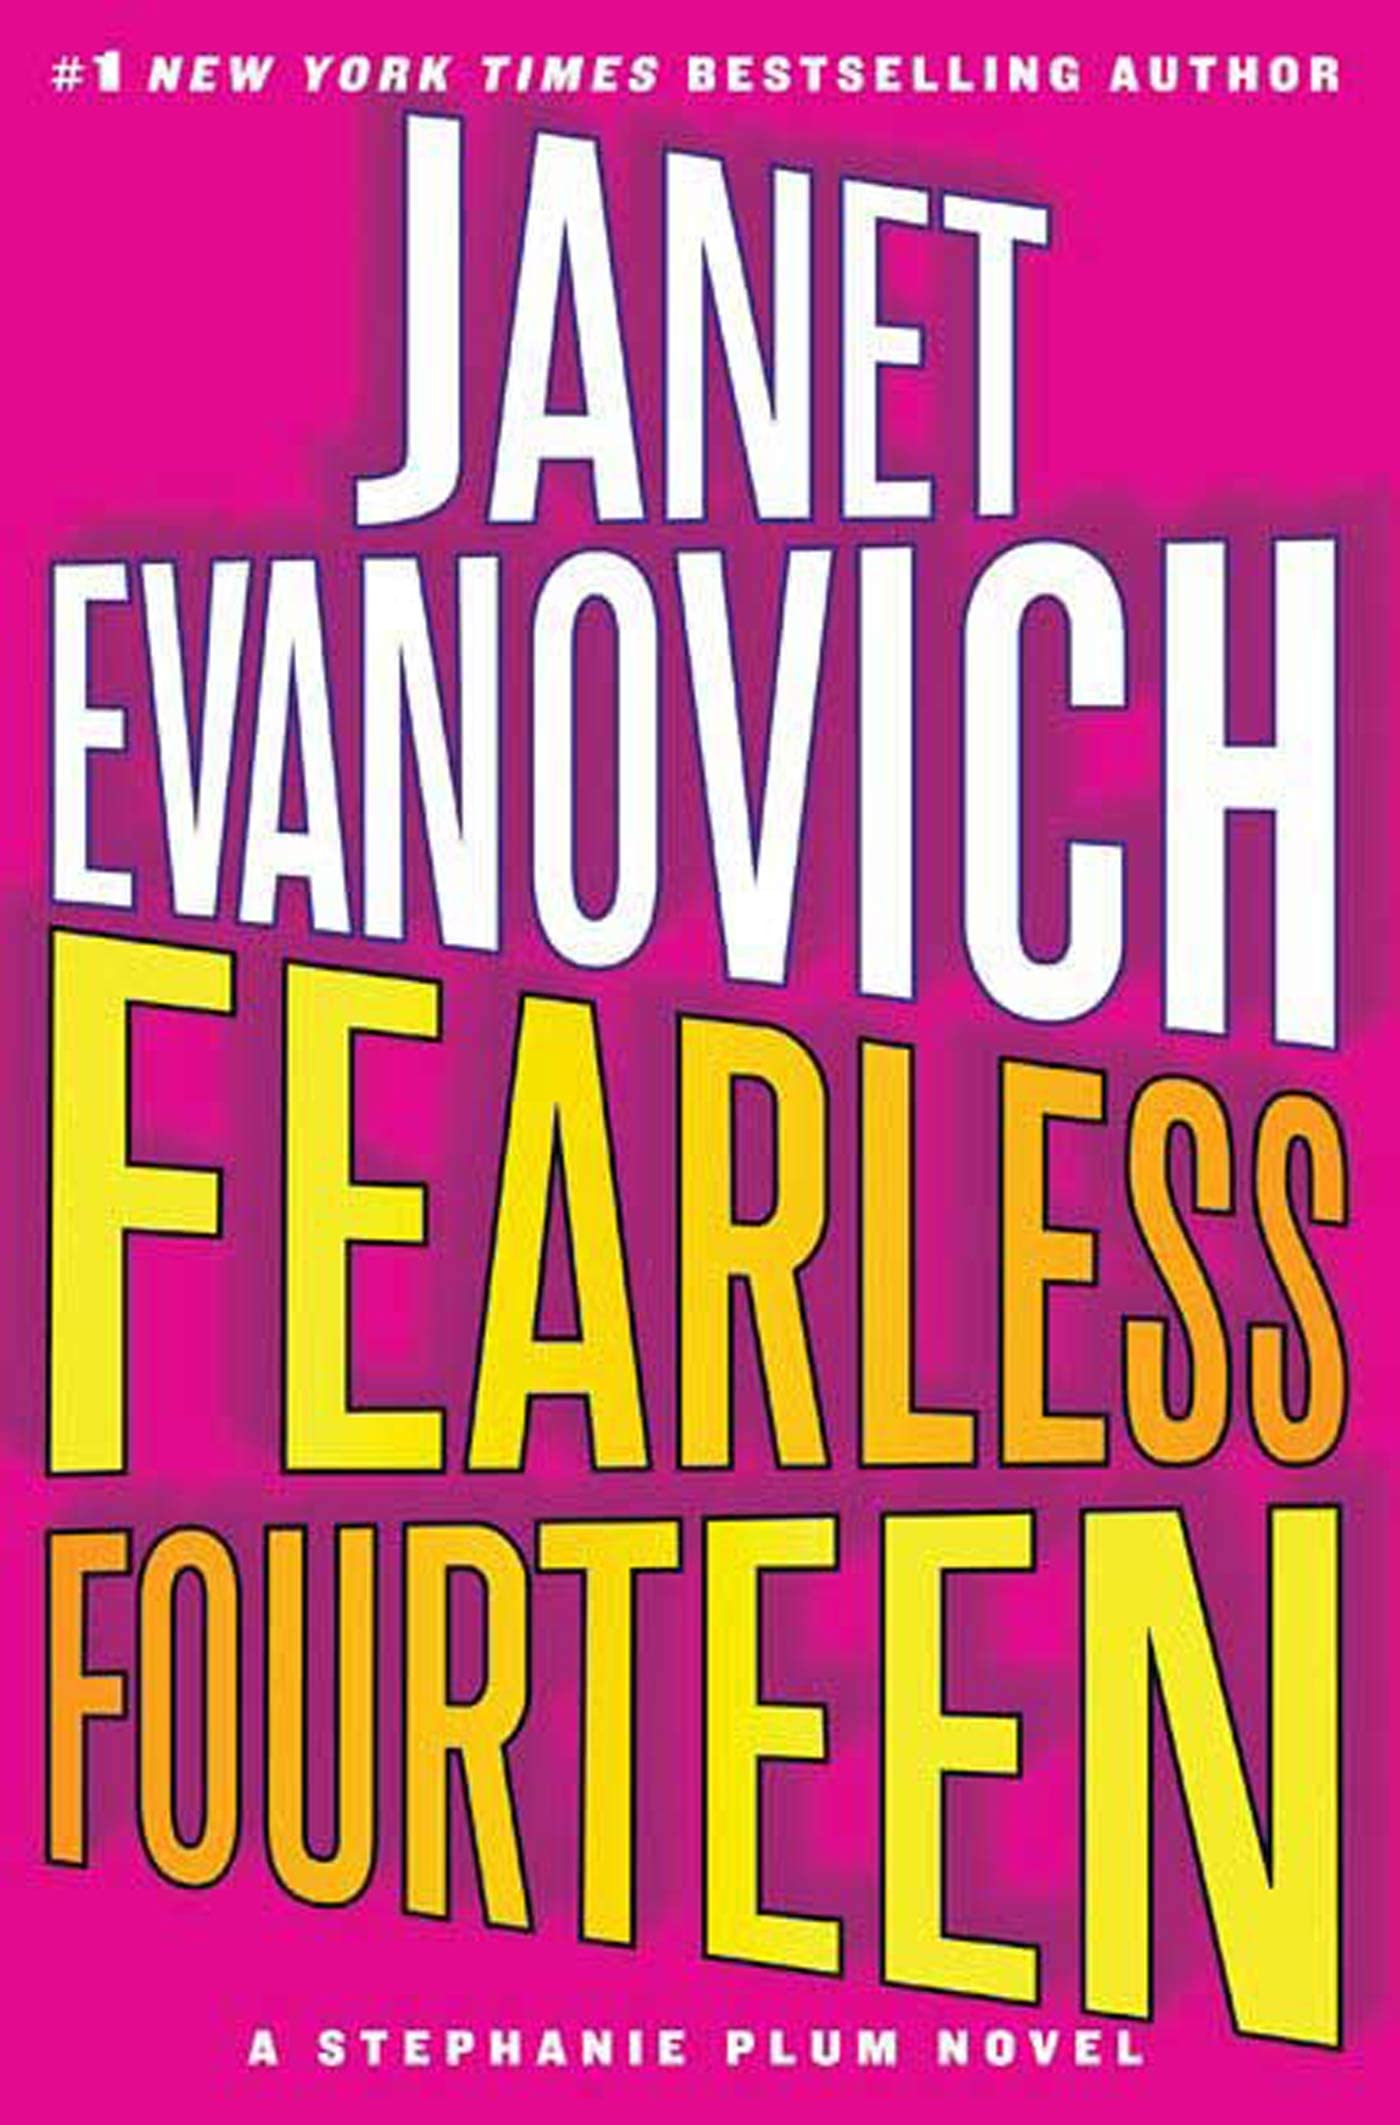 Fearless Fourteen